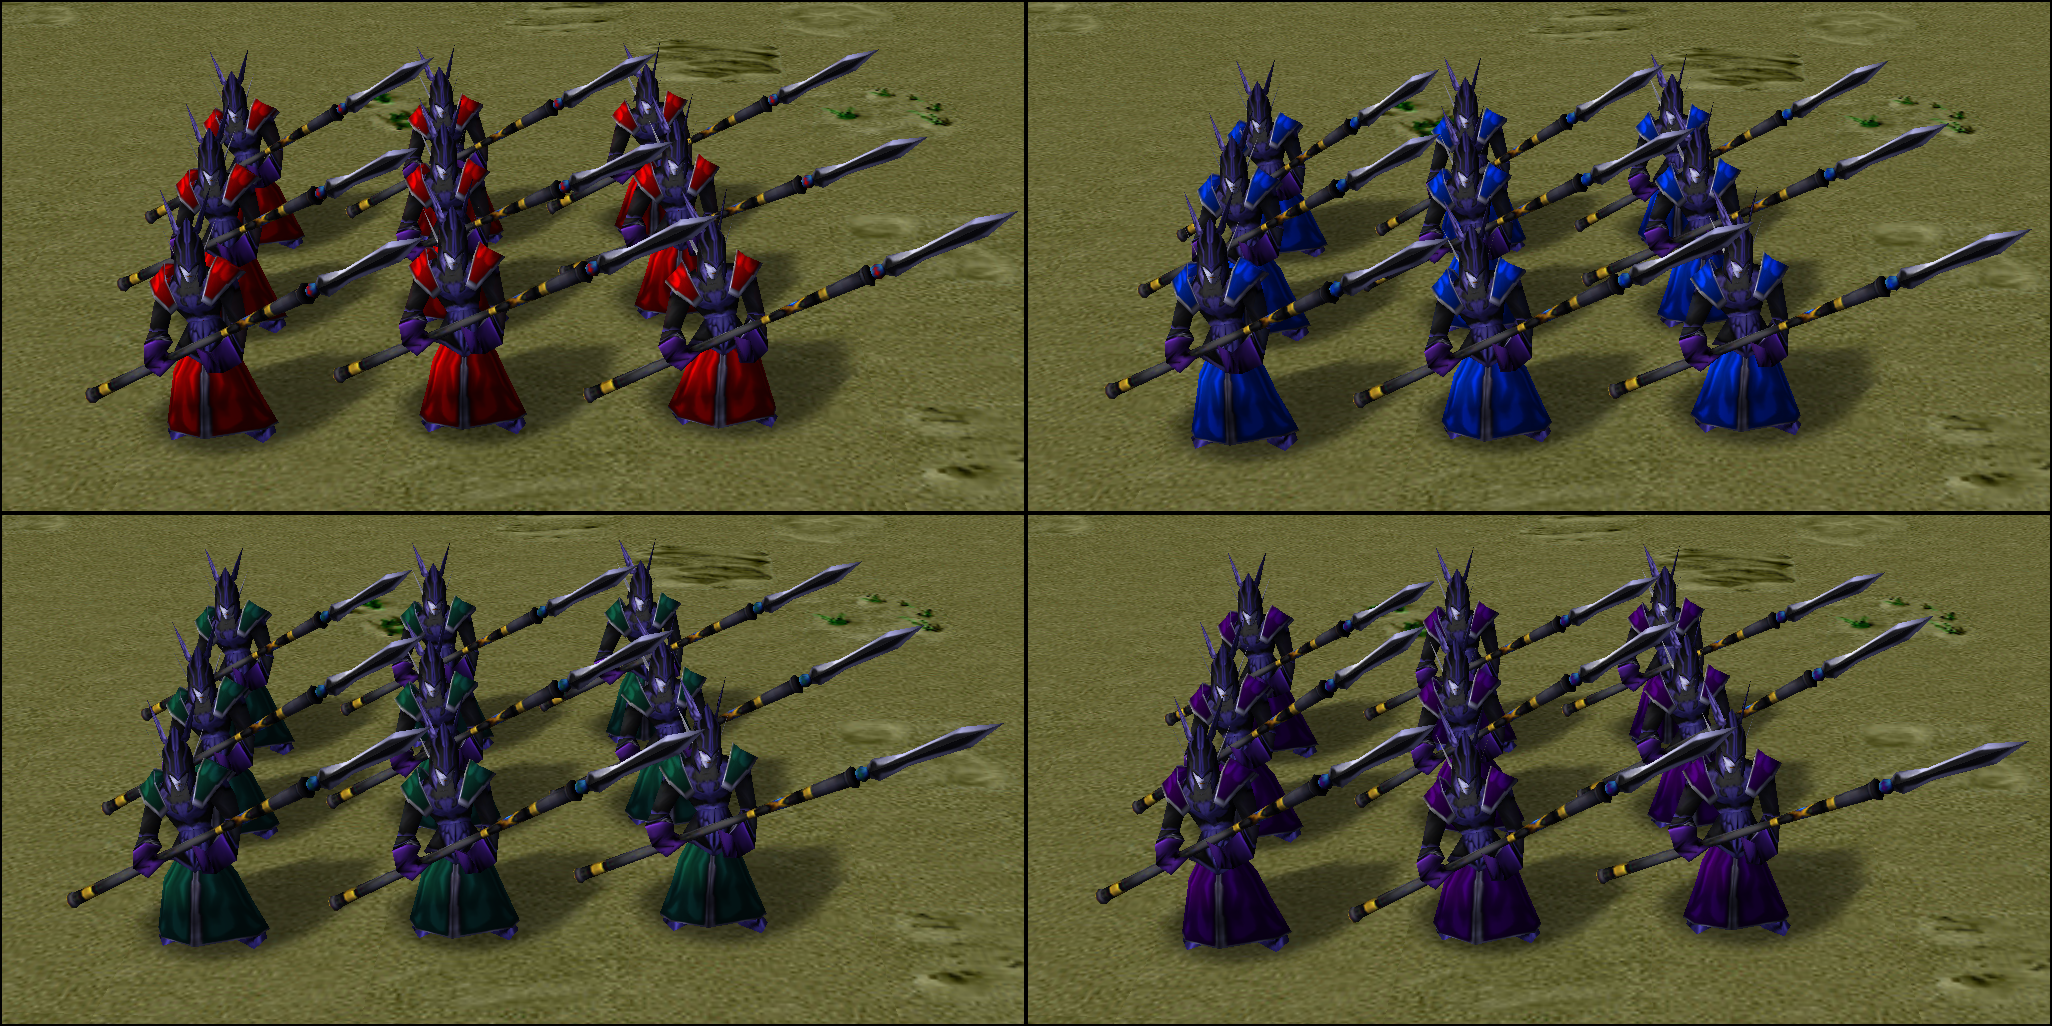 Dark Elves in multiple team colors.